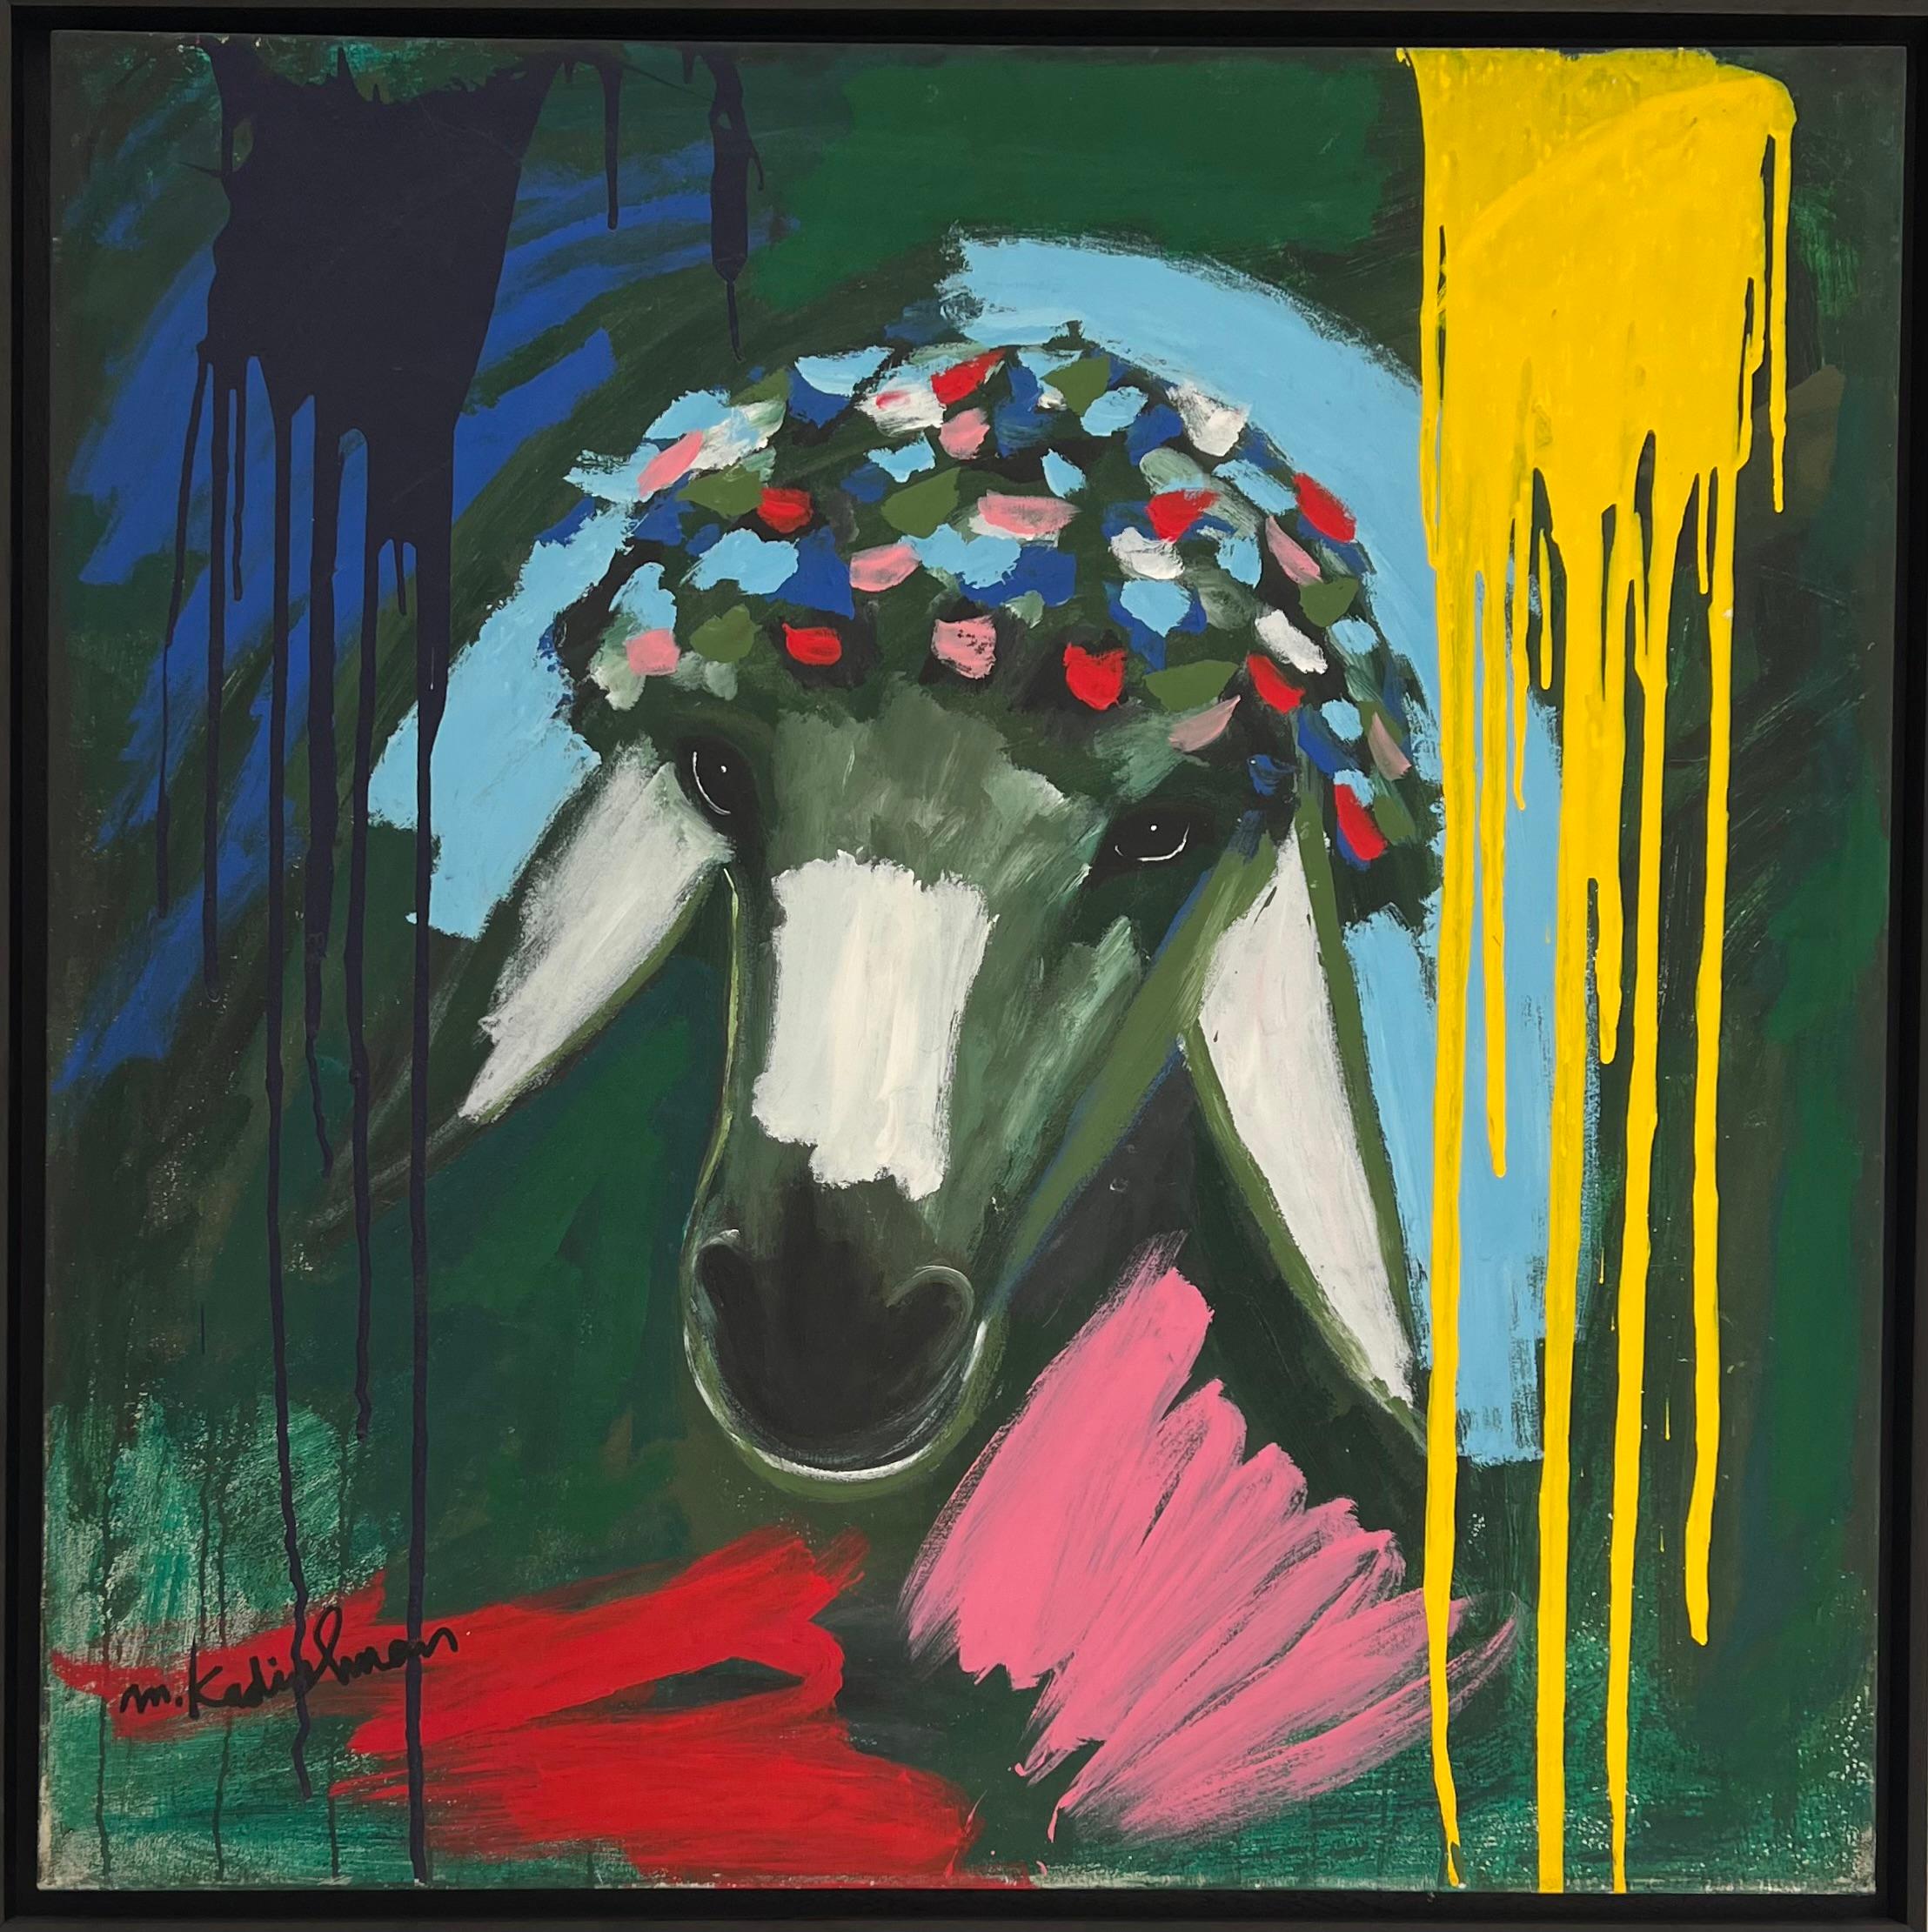 Sheep head - Painting by Menashe Kadishman